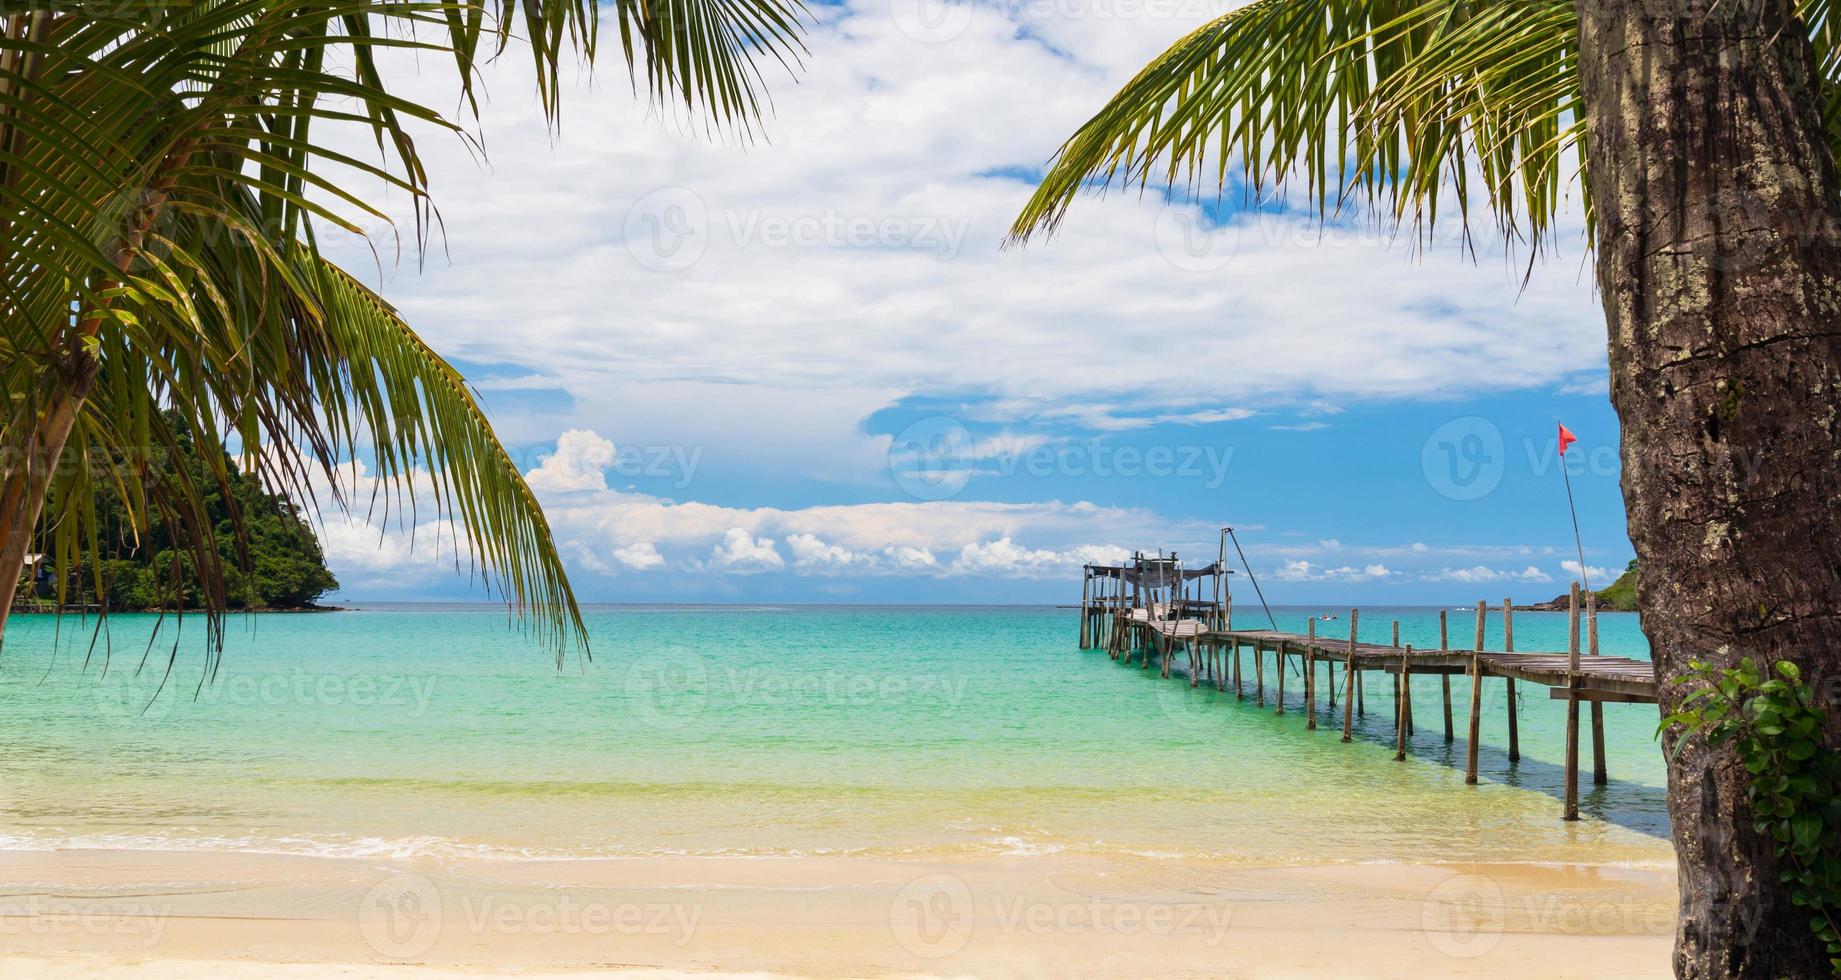 Hermosa playa tropical y mar con palmeras de coco bajo un cielo azul foto